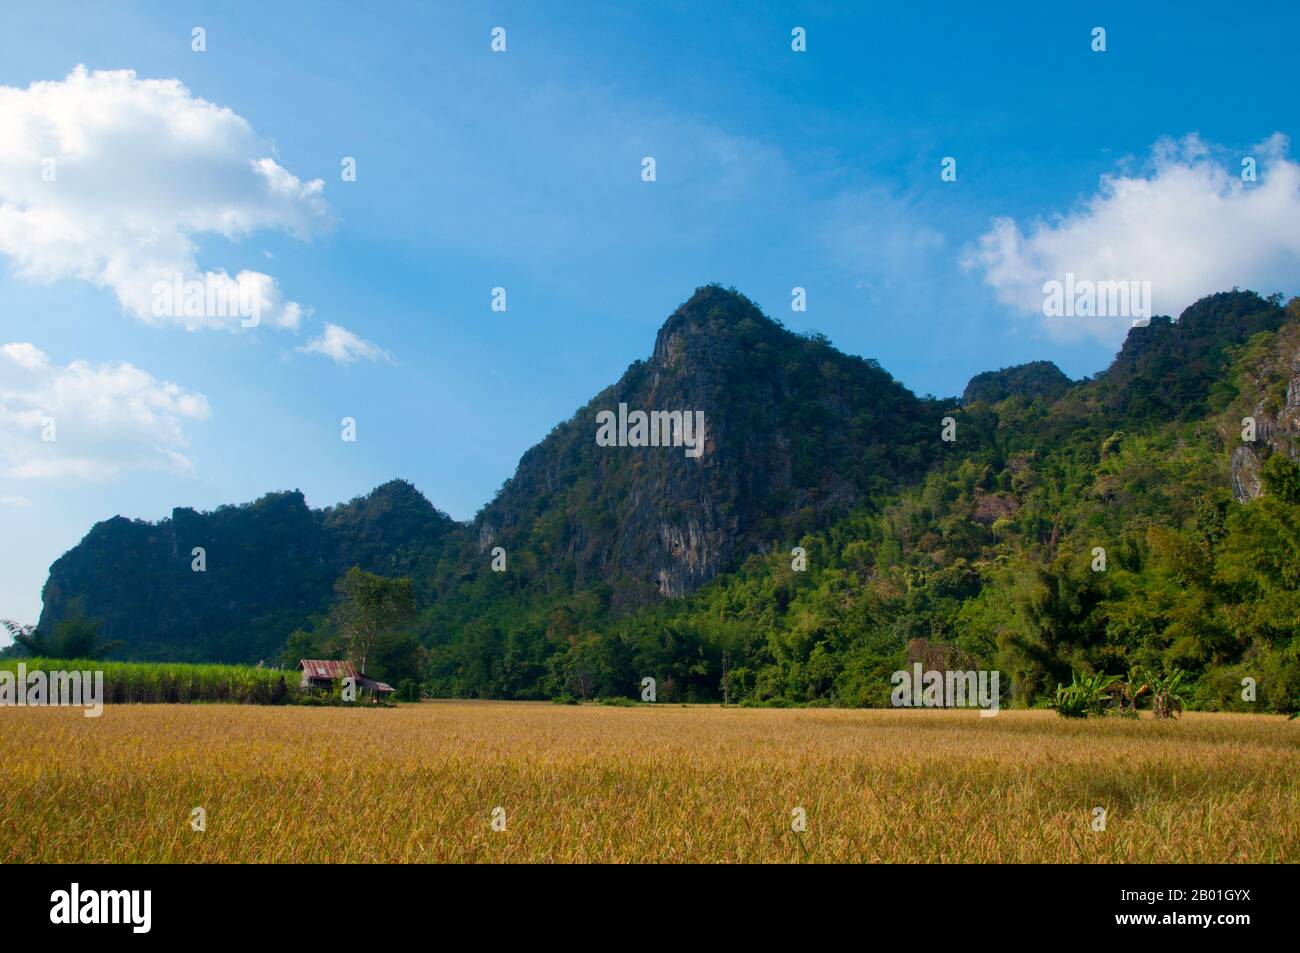 Thailand: Nationalpark Kuan Pha Lom, Provinz Loei. Die Provinz Loei (Thai: เลย) befindet sich im oberen Nordosten Thailands. Die benachbarten Provinzen sind (von Osten nach rechts) Nong Khai, Udon Thani, Nongbua Lamphu, Khon Kaen, Phetchabun, Phitsanulok. Im Norden grenzt sie an die Provinzen Xaignabouli und Vientiane in Laos. Die Provinz ist von niedrigen Bergen bedeckt, während die Hauptstadt Loei in einem fruchtbaren Becken liegt. Der Fluss Loei, der durch die Provinz fließt, ist ein Nebenfluss des Mekong, der zusammen mit dem kleineren Fluss Hueang die nördliche Grenze der Provinz zu Laos bildet. Stockfoto